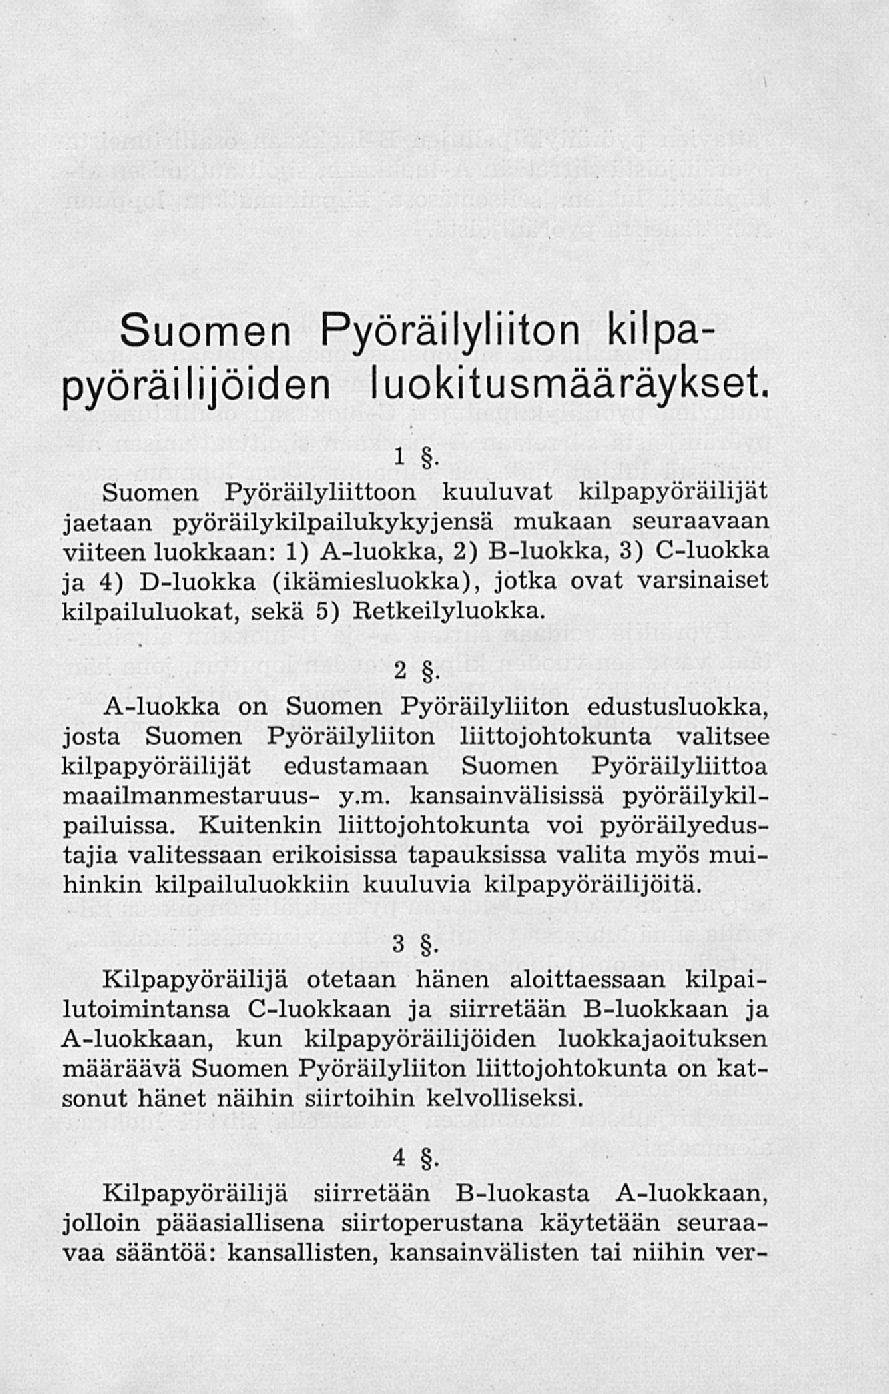 Suomen Pyöräilyliiton kilpapyöräilijöiden luokitusmääräykset. i.